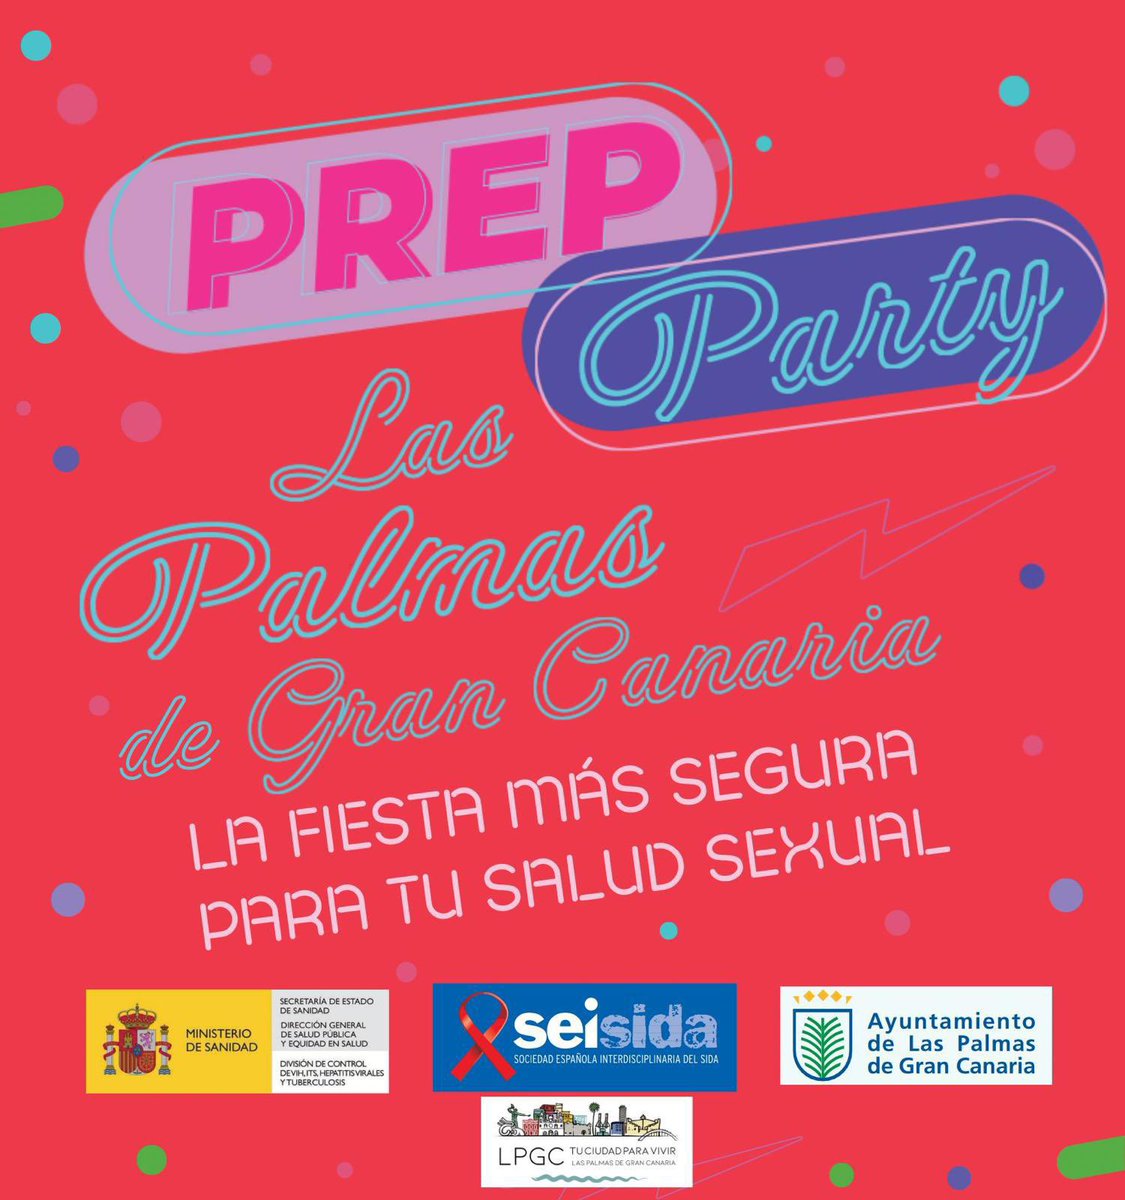 No te pierdas *PrEP Party Las Palmas de Gran Canaria* la fiesta en la que hablamos de PrEP como estrategia de prevención, combinada al VIH y de salud sexual gracias a la sociedad interdisciplinaria del sida (Seisida) y la División de control de VIH (Ministerio de sanidad) junto